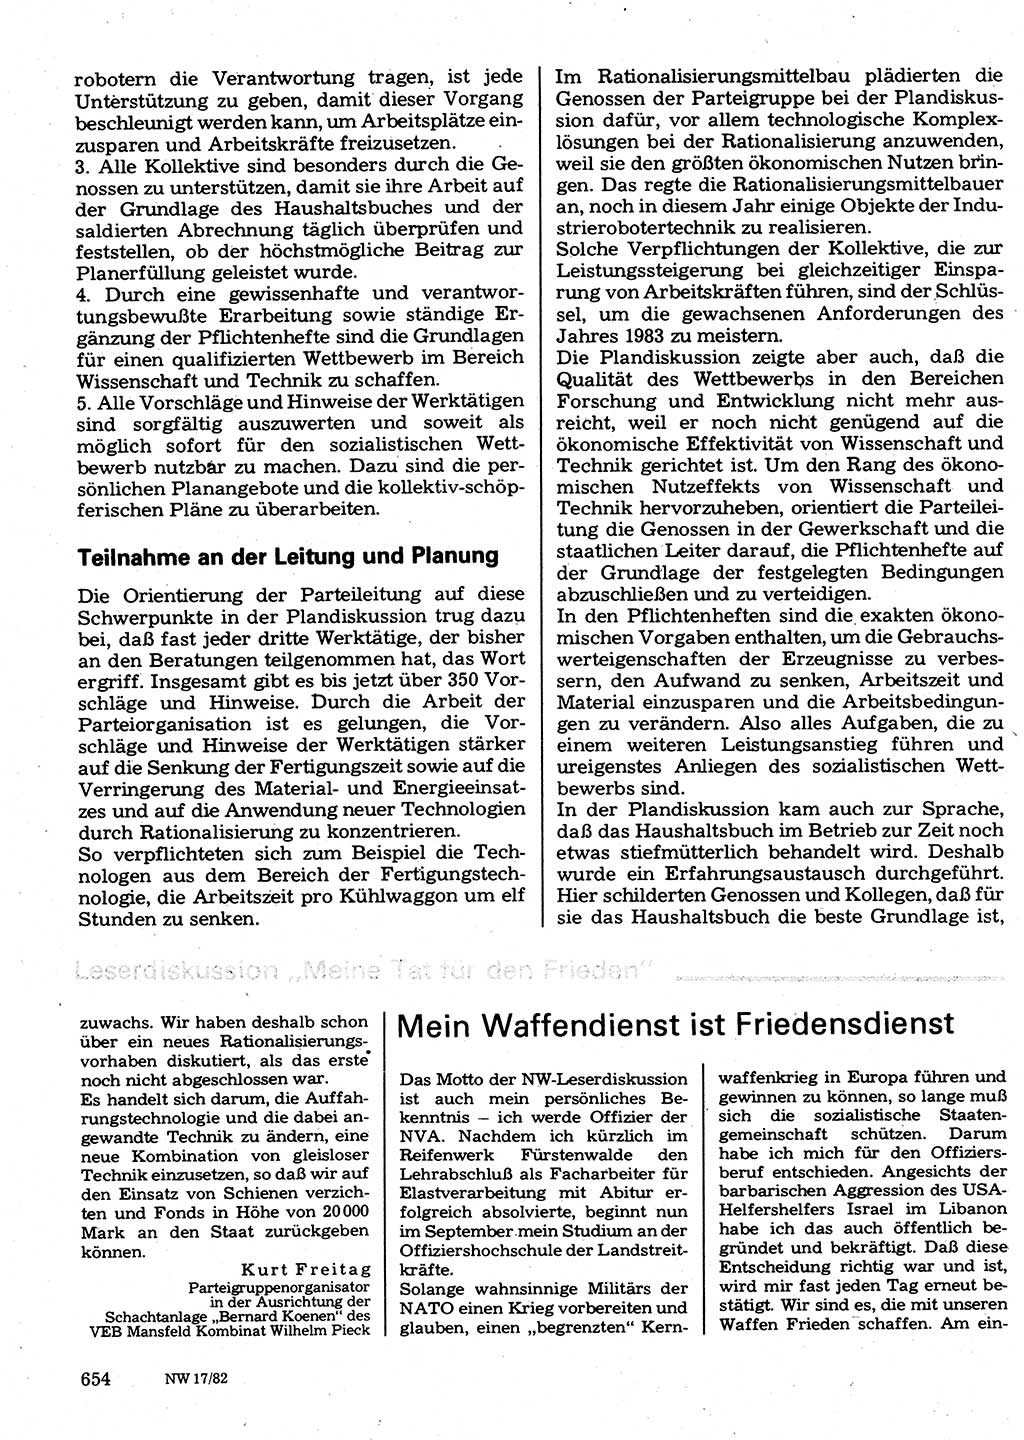 Neuer Weg (NW), Organ des Zentralkomitees (ZK) der SED (Sozialistische Einheitspartei Deutschlands) für Fragen des Parteilebens, 37. Jahrgang [Deutsche Demokratische Republik (DDR)] 1982, Seite 654 (NW ZK SED DDR 1982, S. 654)